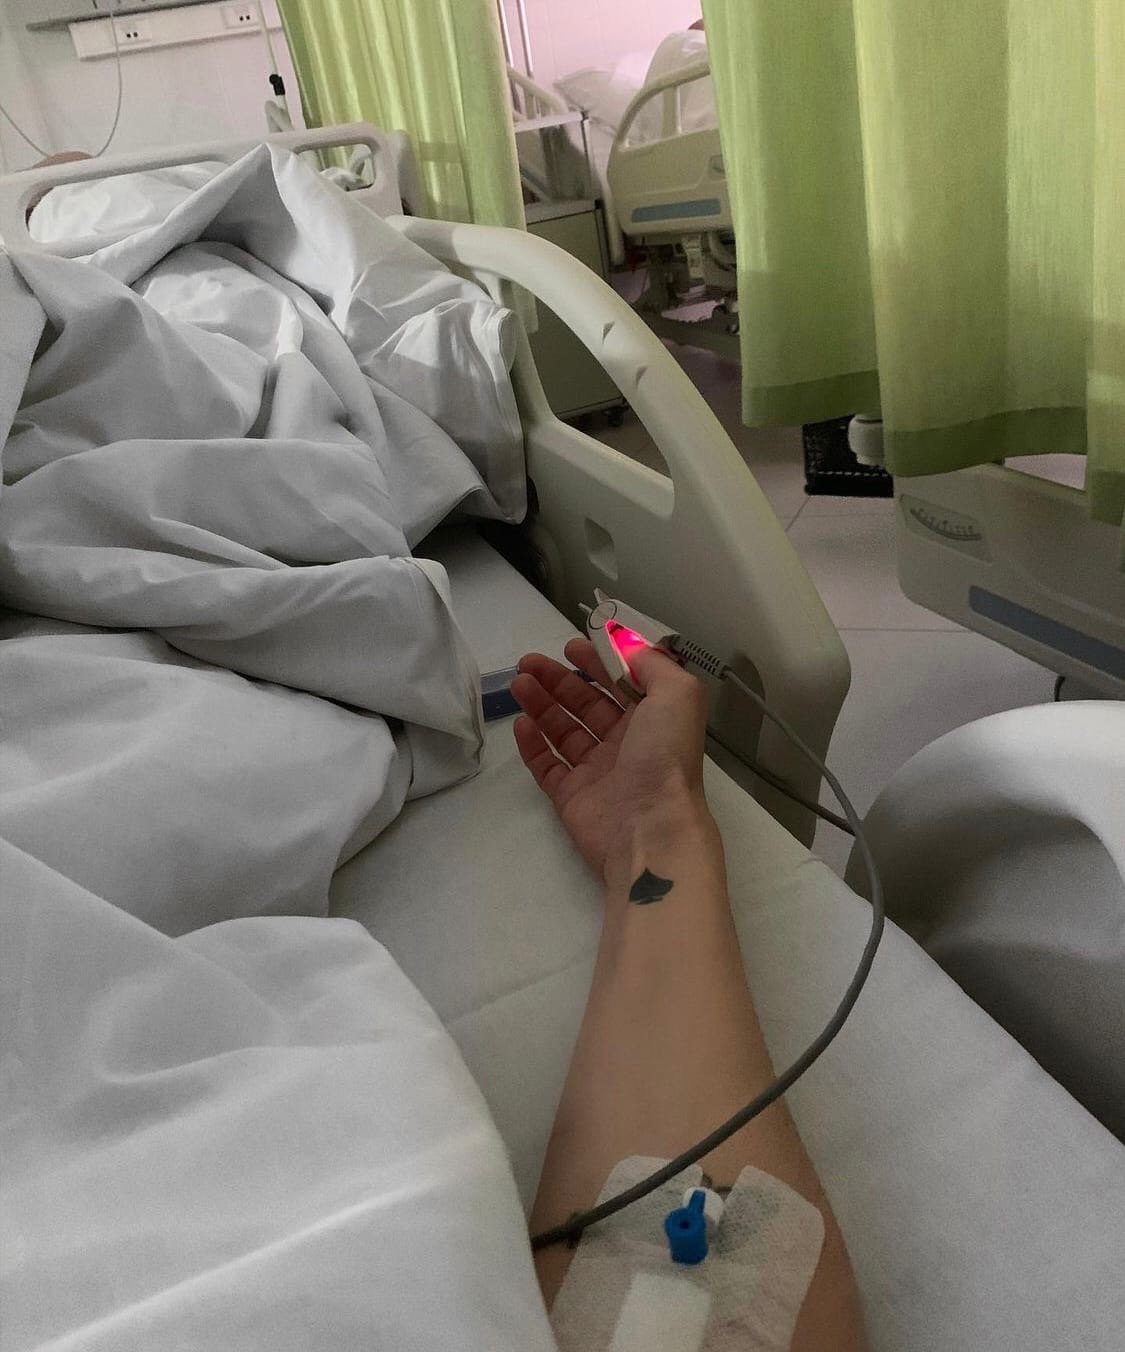 "Ушла в тапочках": почему Алёна Водонаева недовольна своим пребыванием в больнице